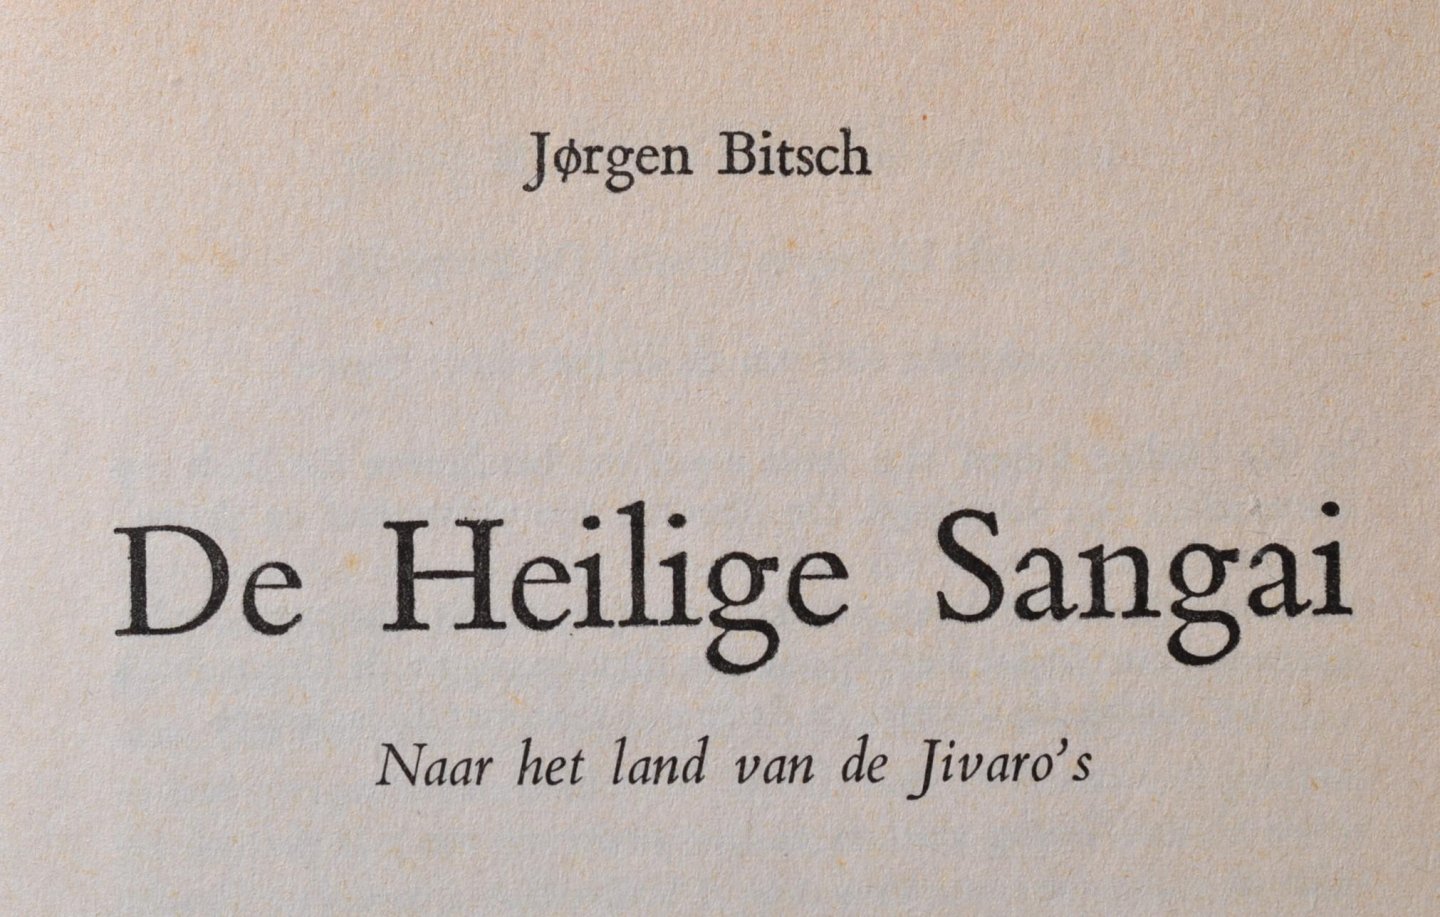 Bitsch, Jorgen - De Heilige Sangai - naar het land van de Jivaro's